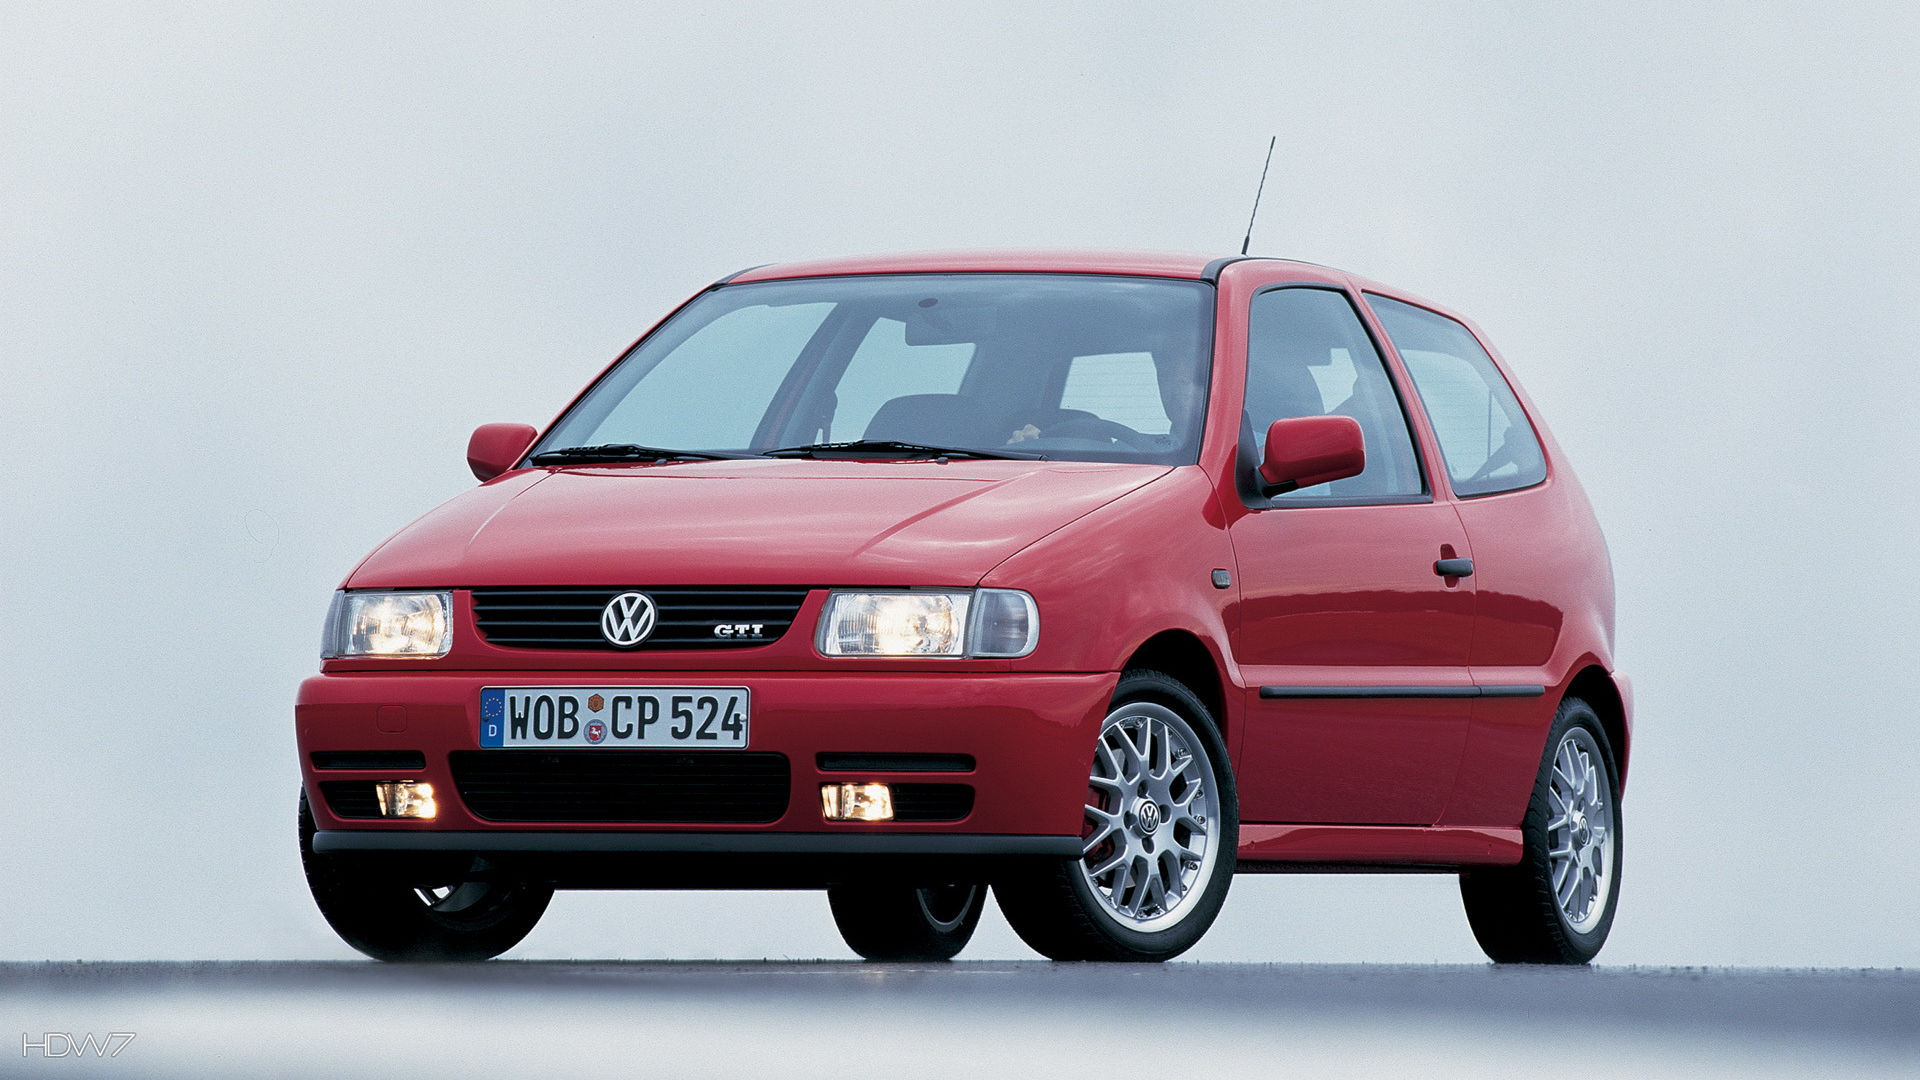 Volkswagen Polo Gti 1998 Car Hd Wallpaper - Volkswagen Polo 1998 Gti - HD Wallpaper 